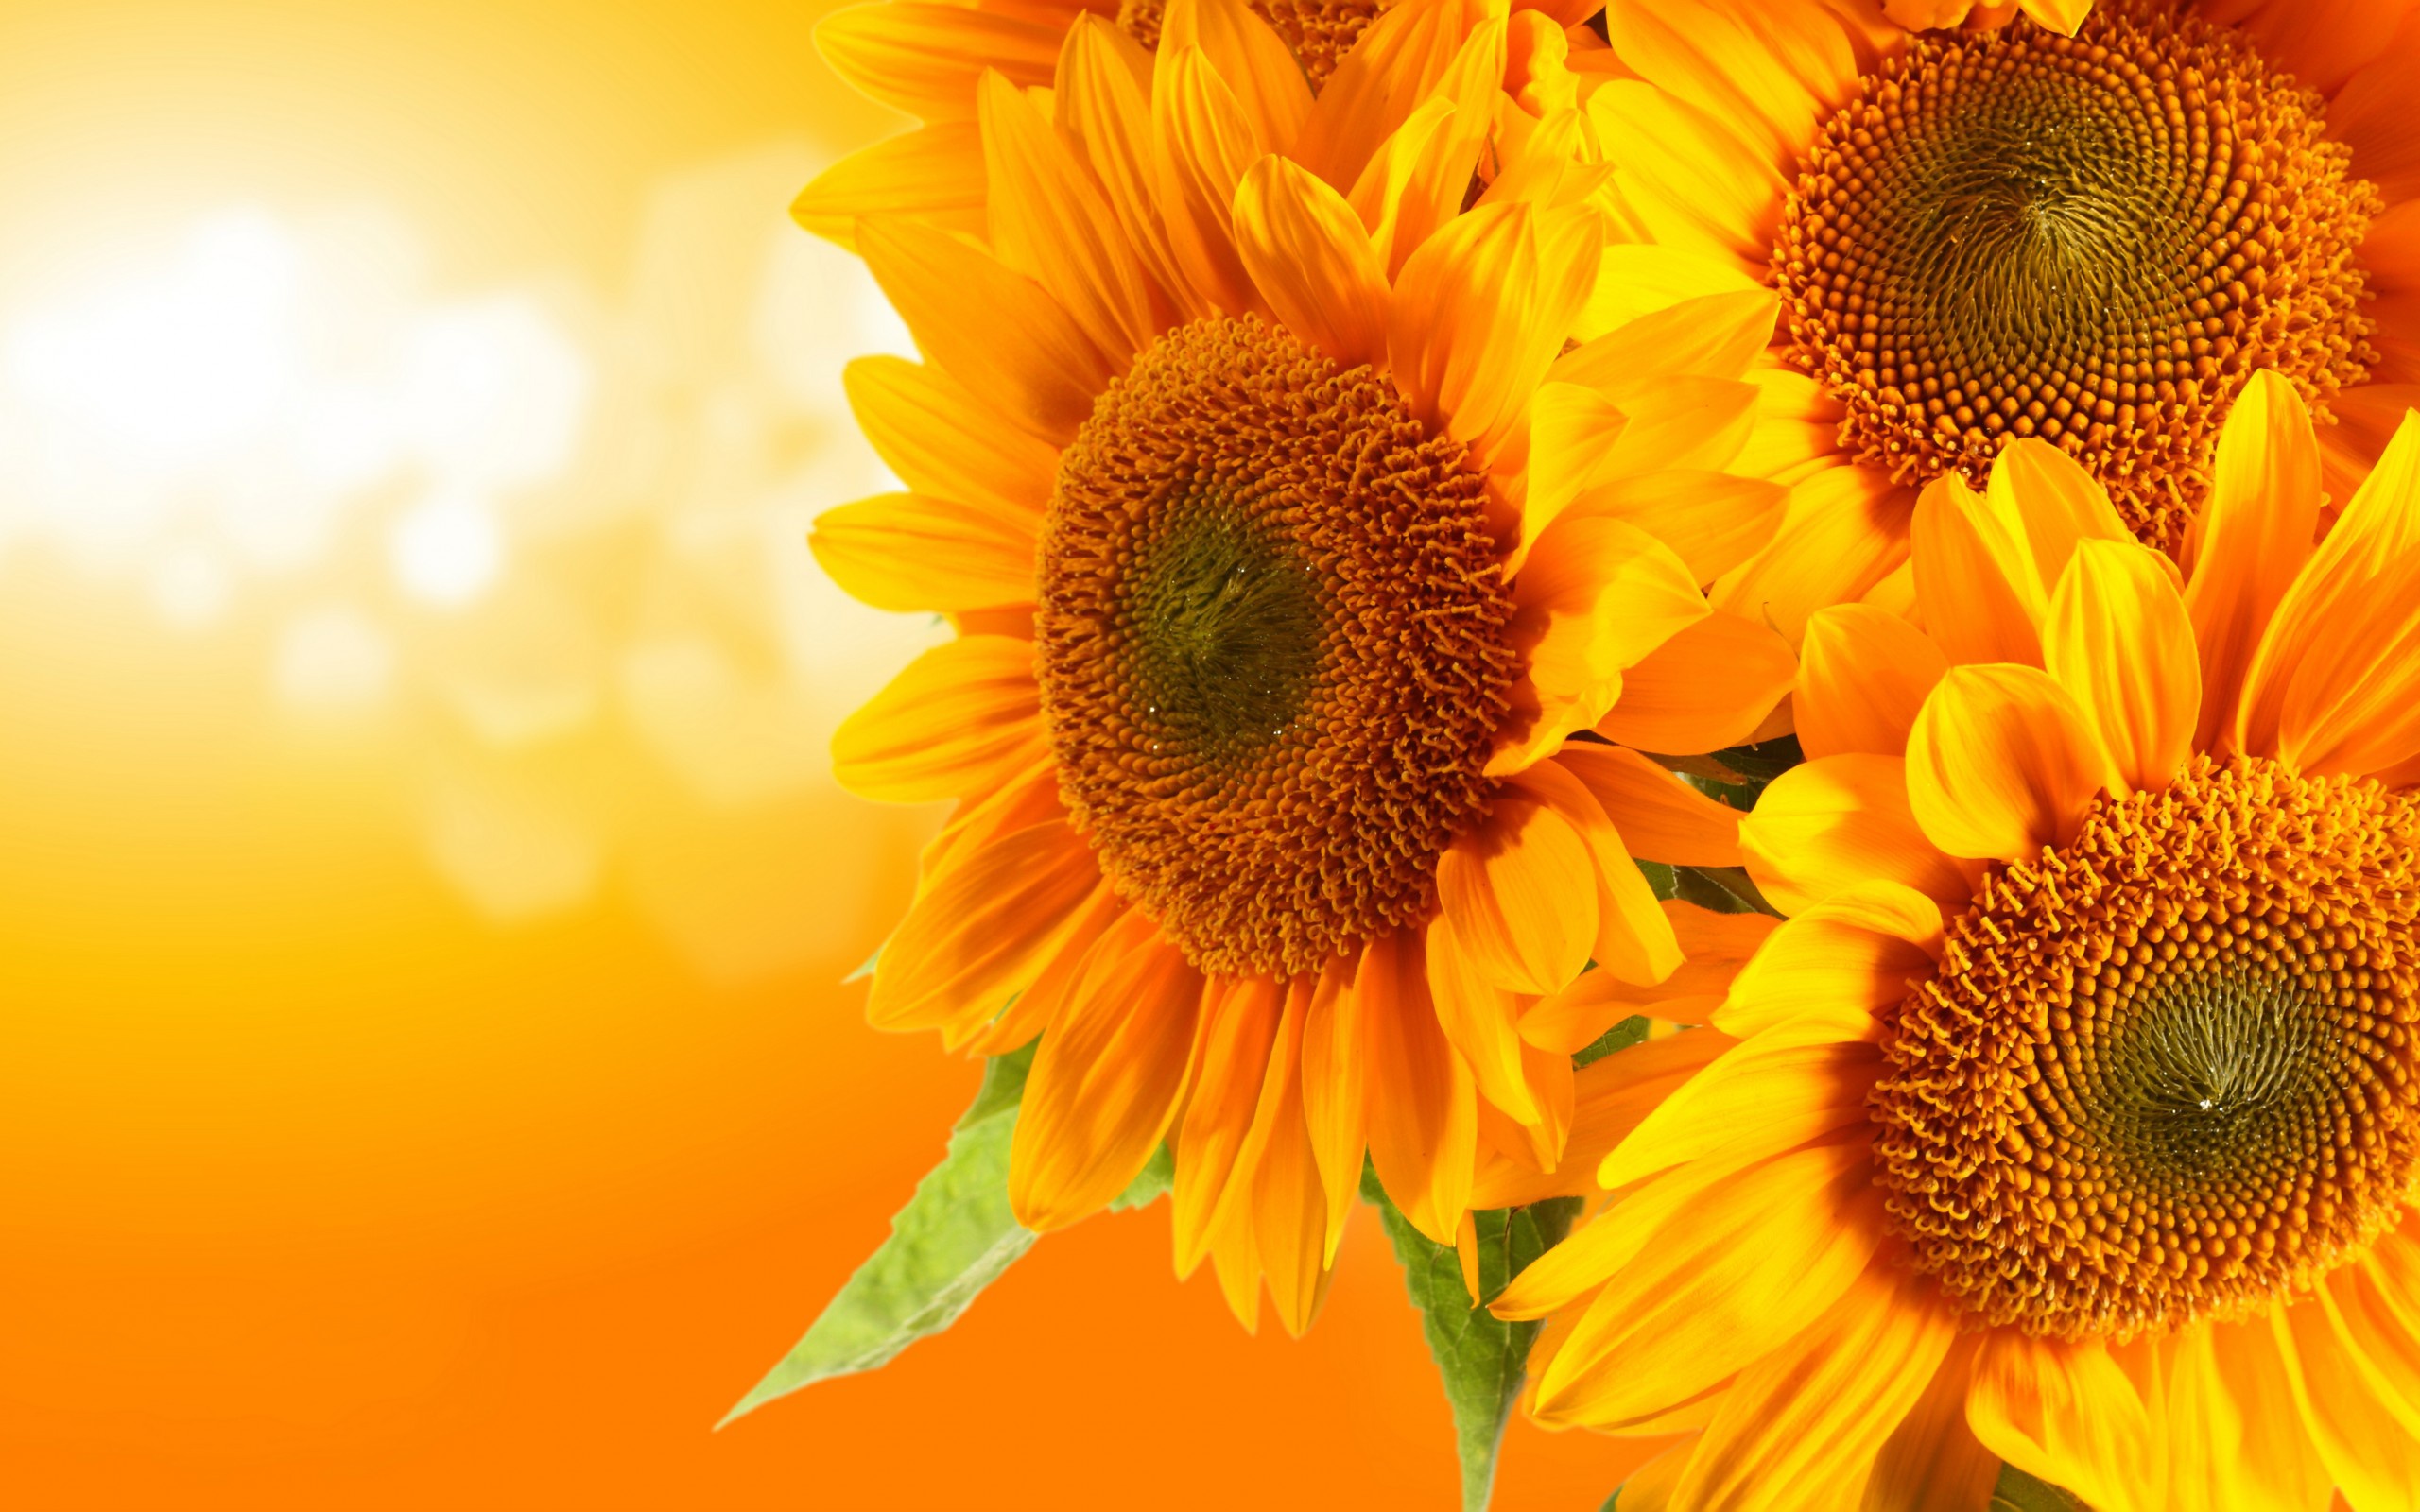 Sunflower Vintage Flower  Free photo on Pixabay  Pixabay